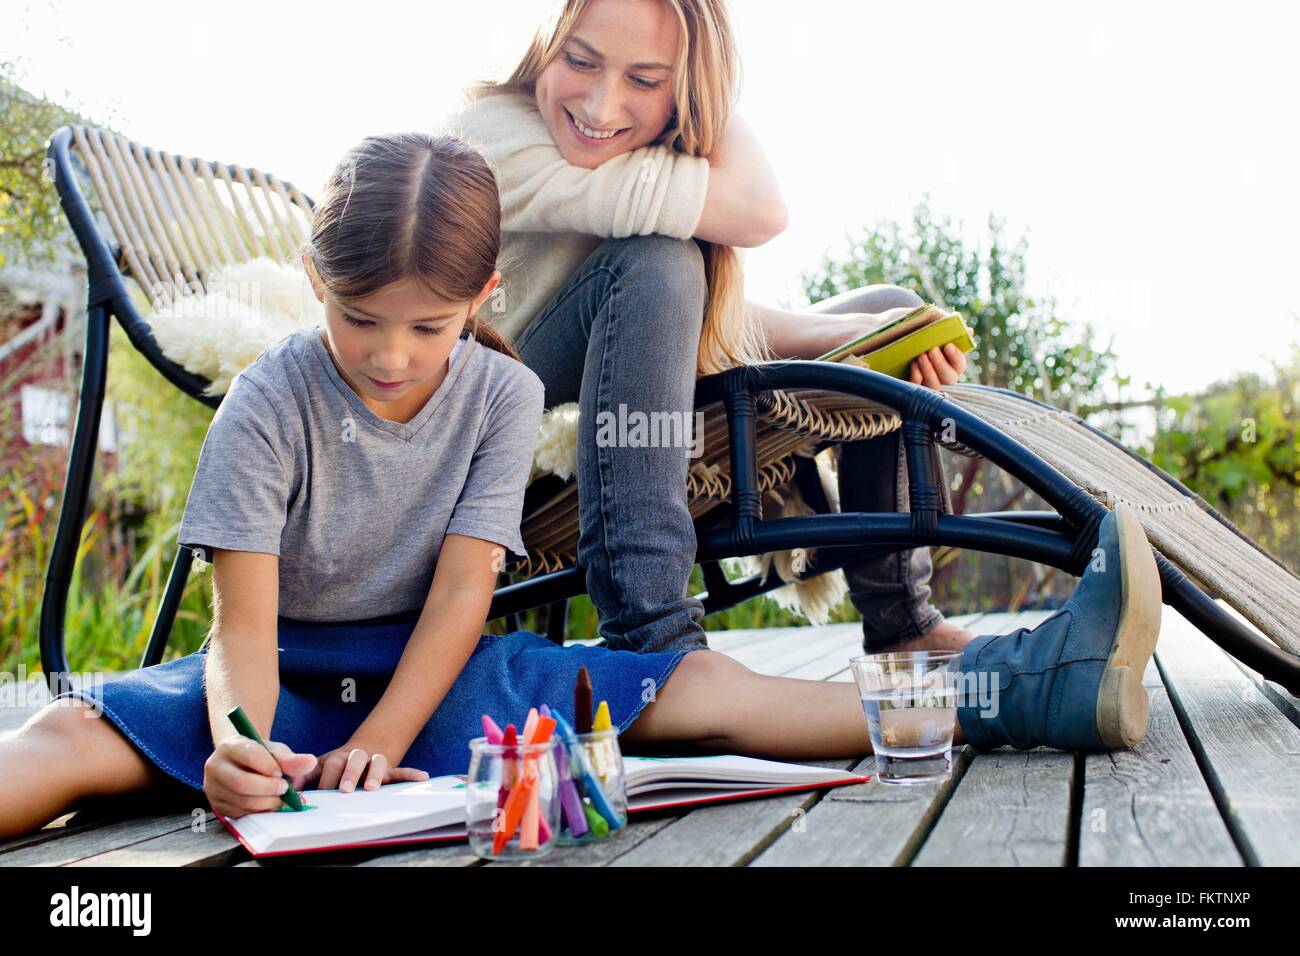 Ragazza disegno su decking con la madre seduta vicino, sorridente Foto Stock